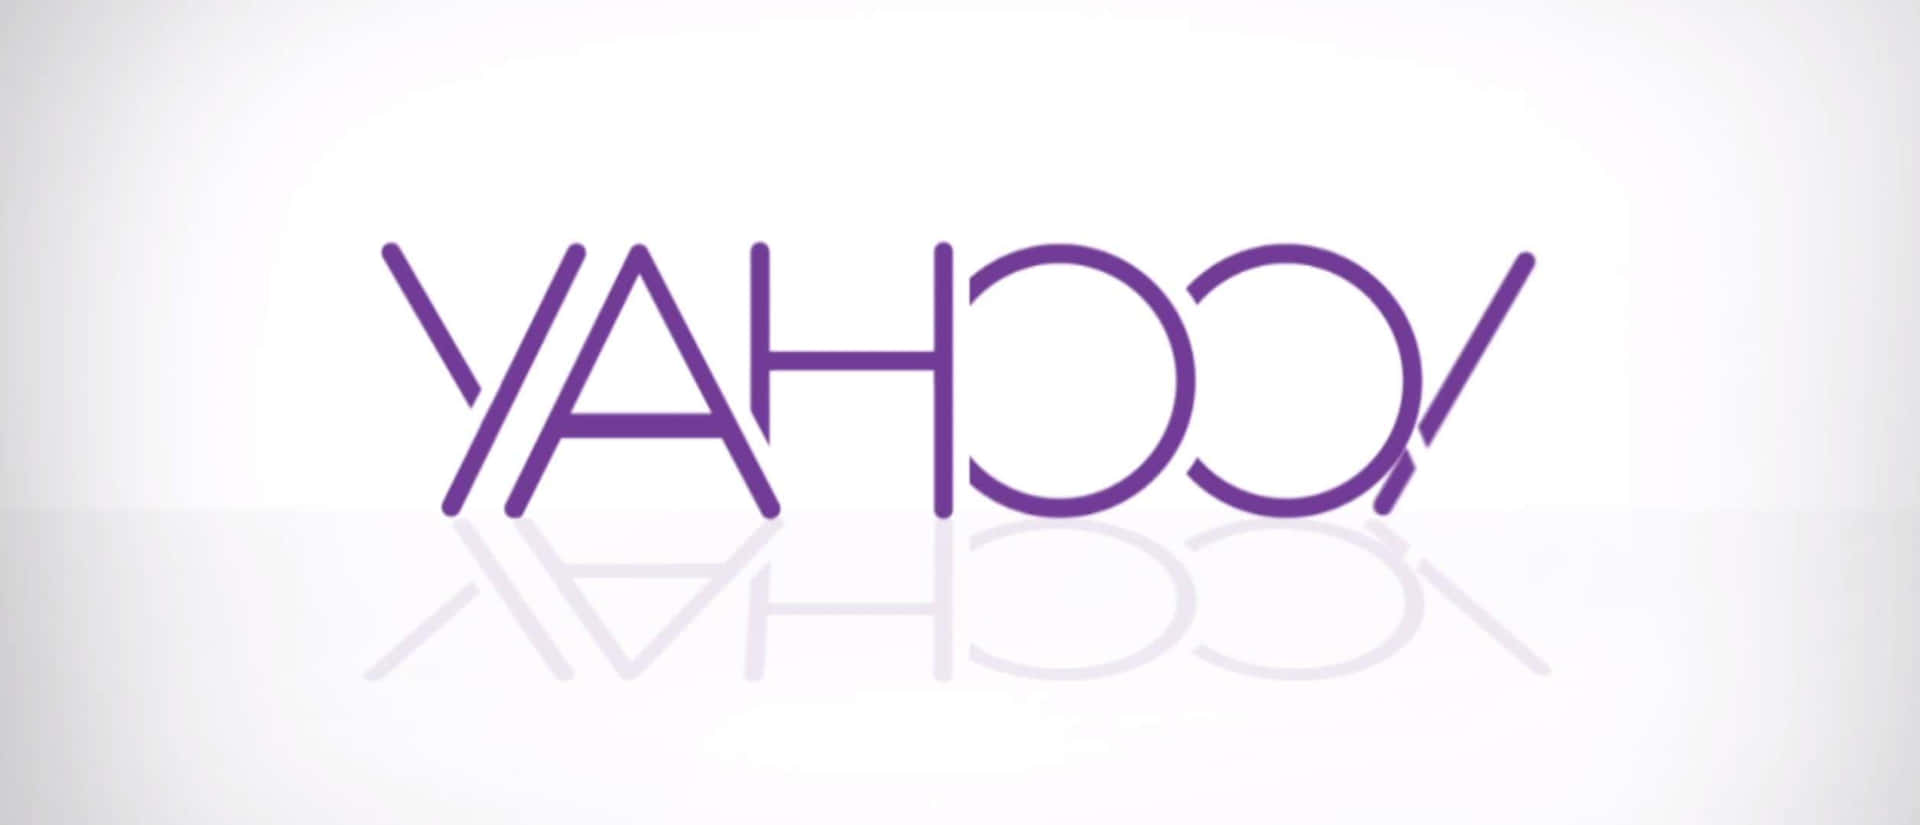 Desbloqueandoel Poder De La Web Con Yahoo.